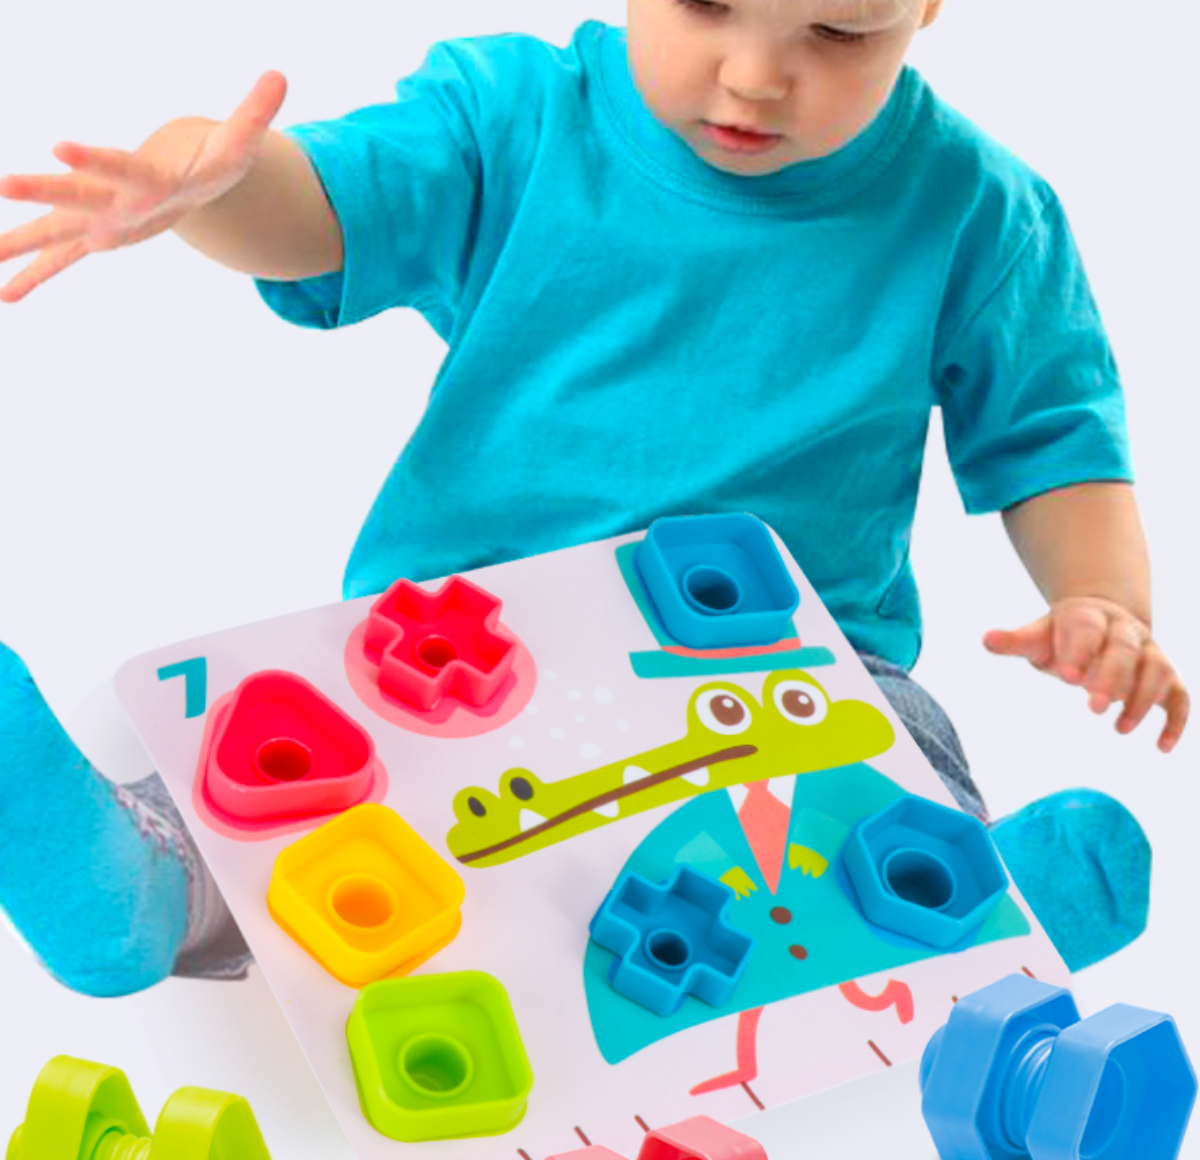 『モンテッソーリ知育おもちゃ』ジャンボナットとボルトセット｜子供のおもちゃ用の図形パズル·形の分類 ·初心者の形のおもちゃ組み立てセット